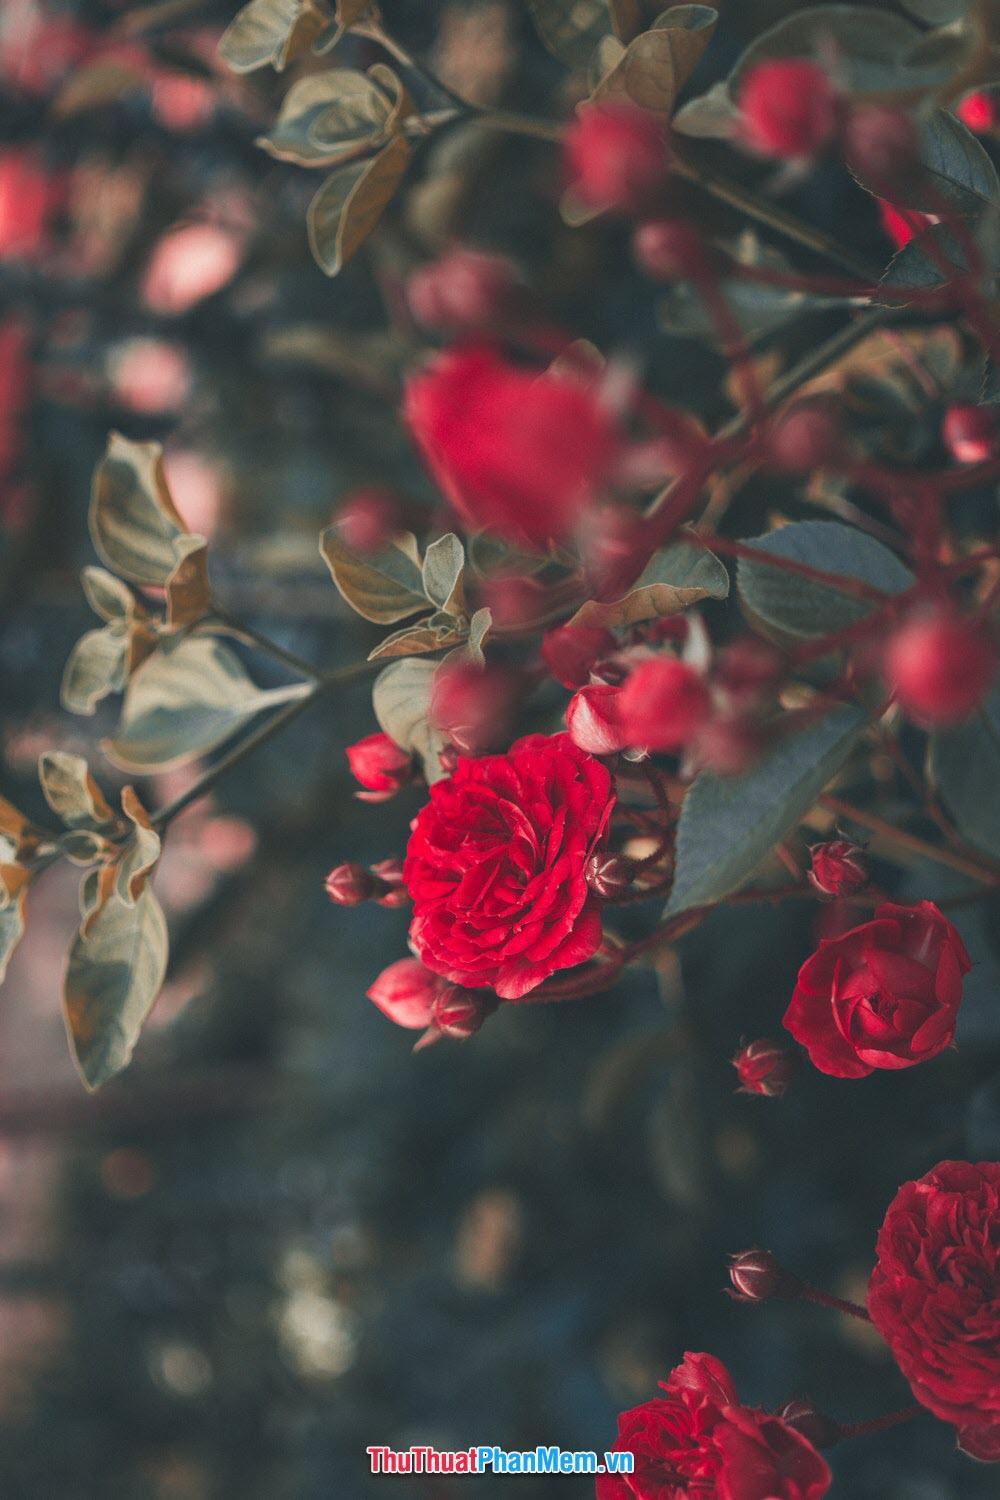 Hoa hồng đỏ tặng cho vợ và người yêu thể hiện tình yêu đằm thắm nồng cháy